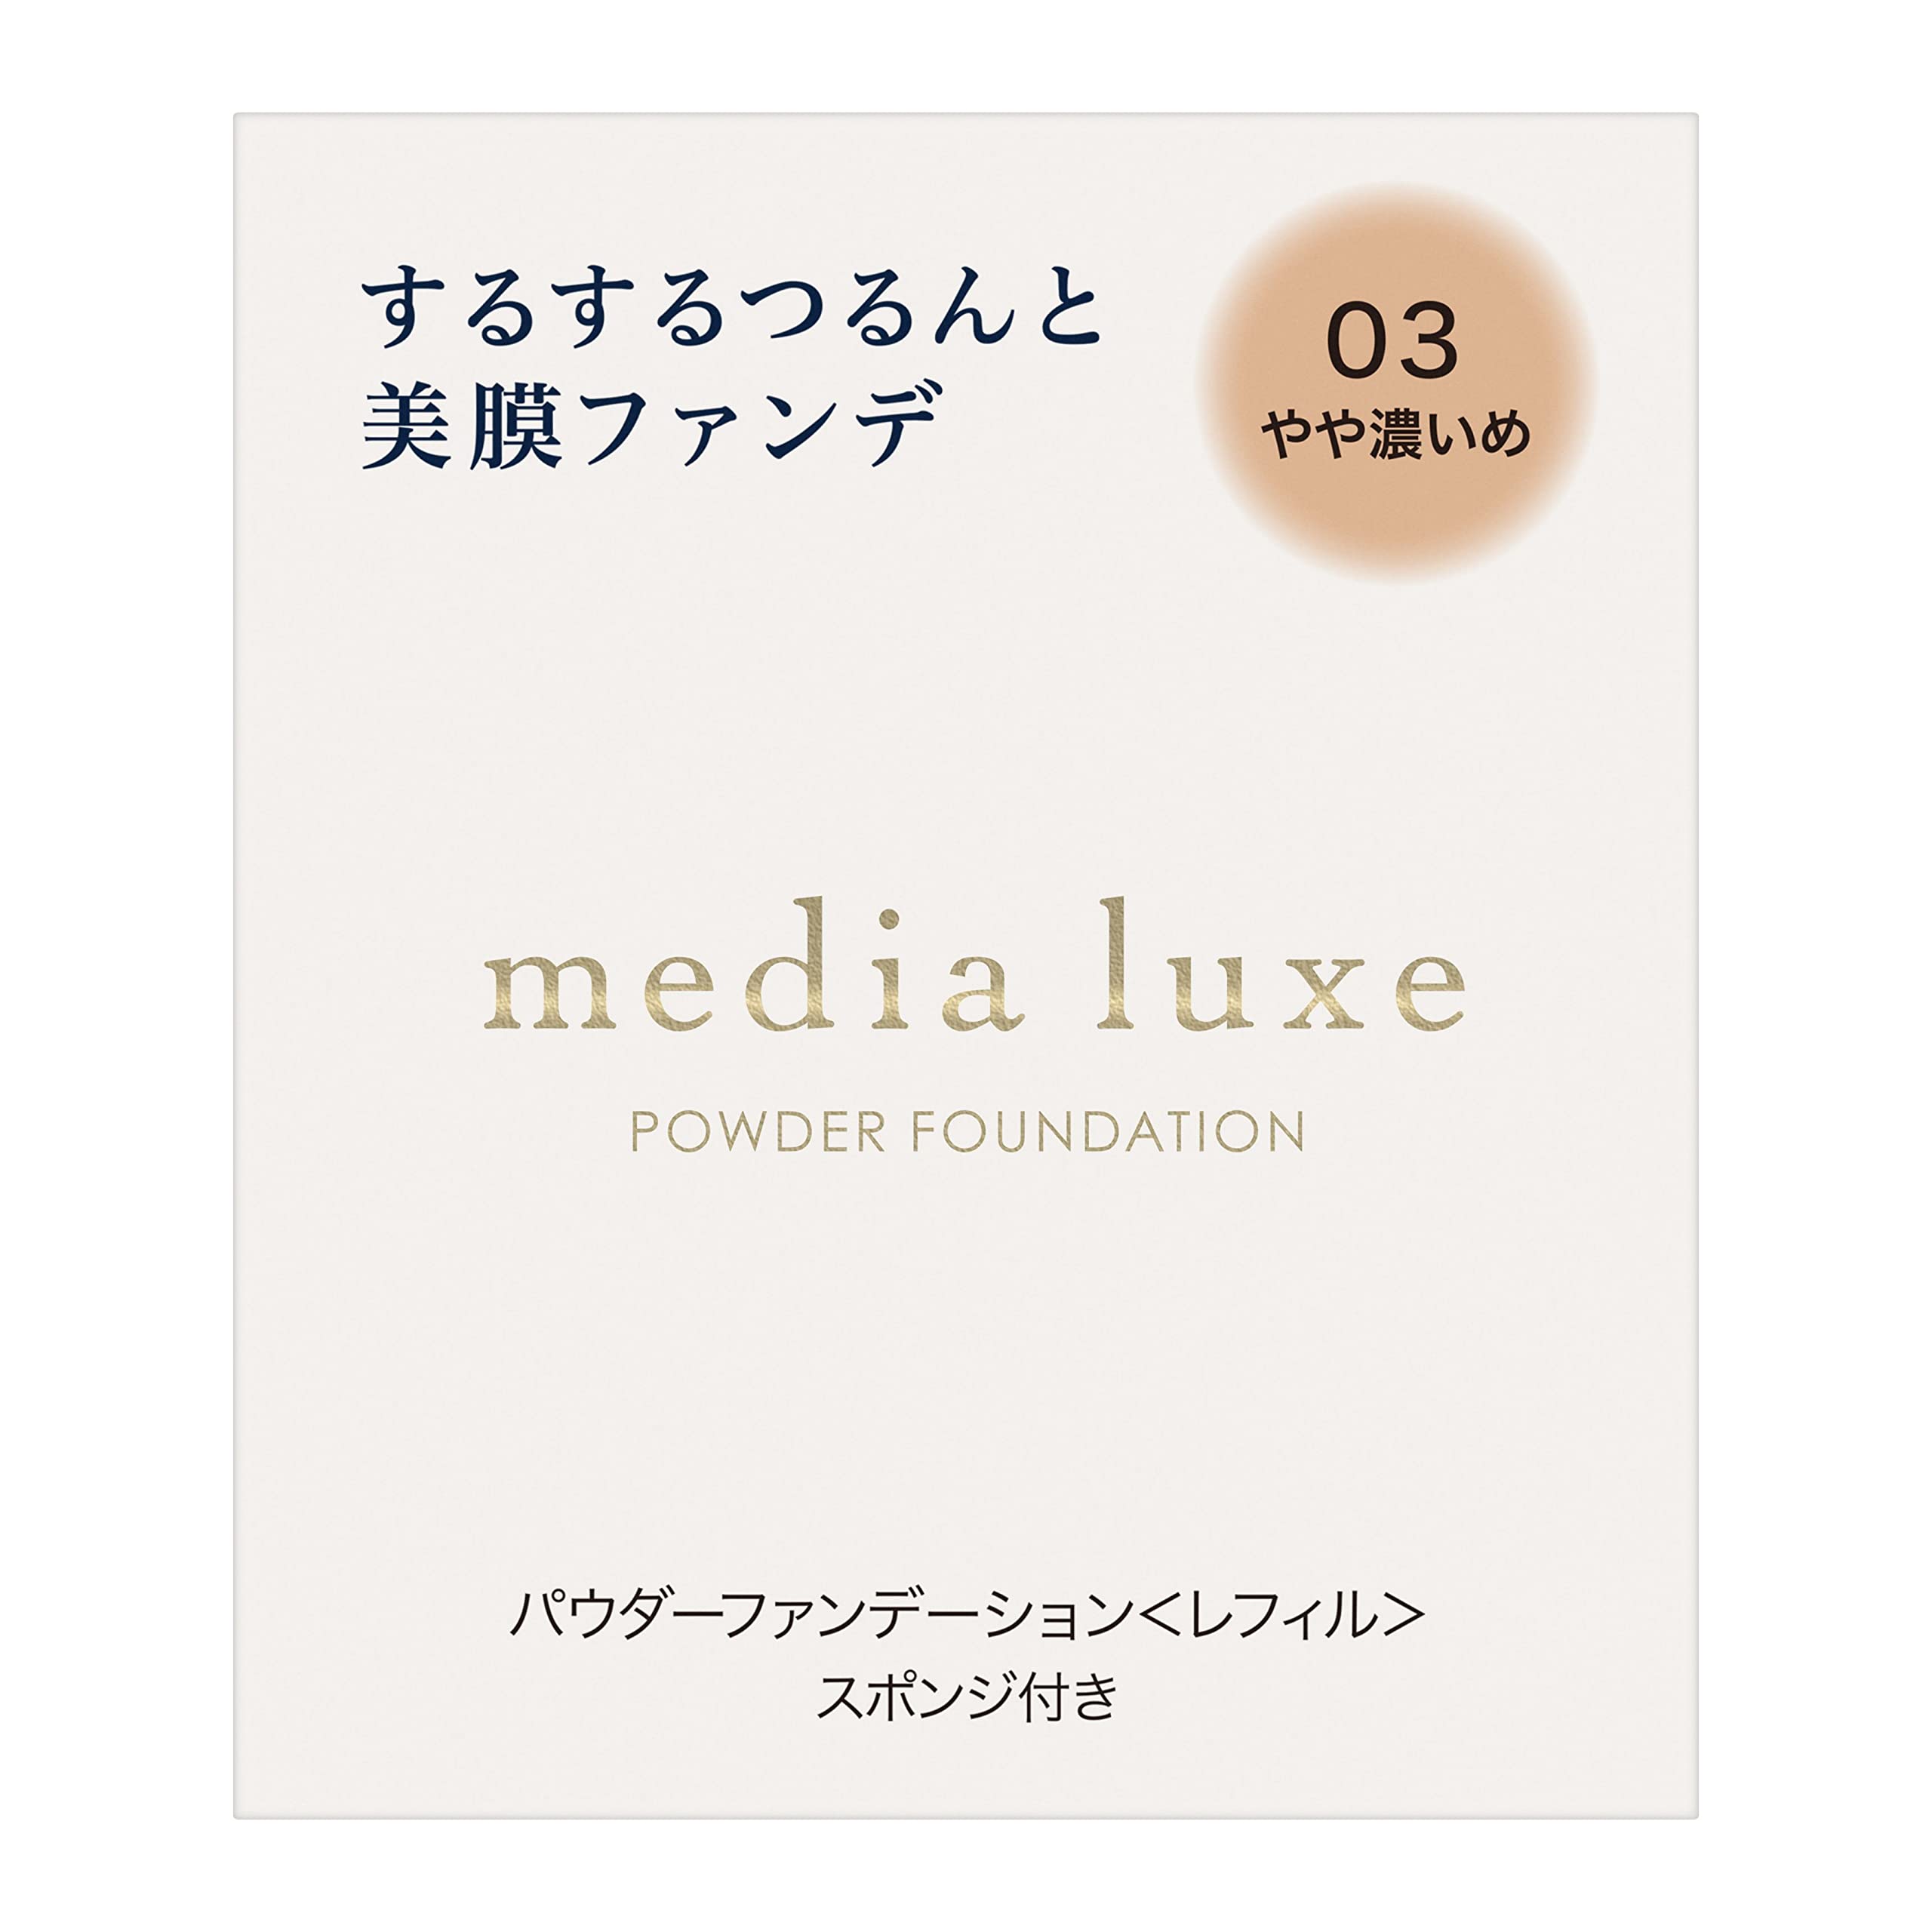 media luxe(メディア リュクス) パウダーファンデーション 03 9グラム (x 1)